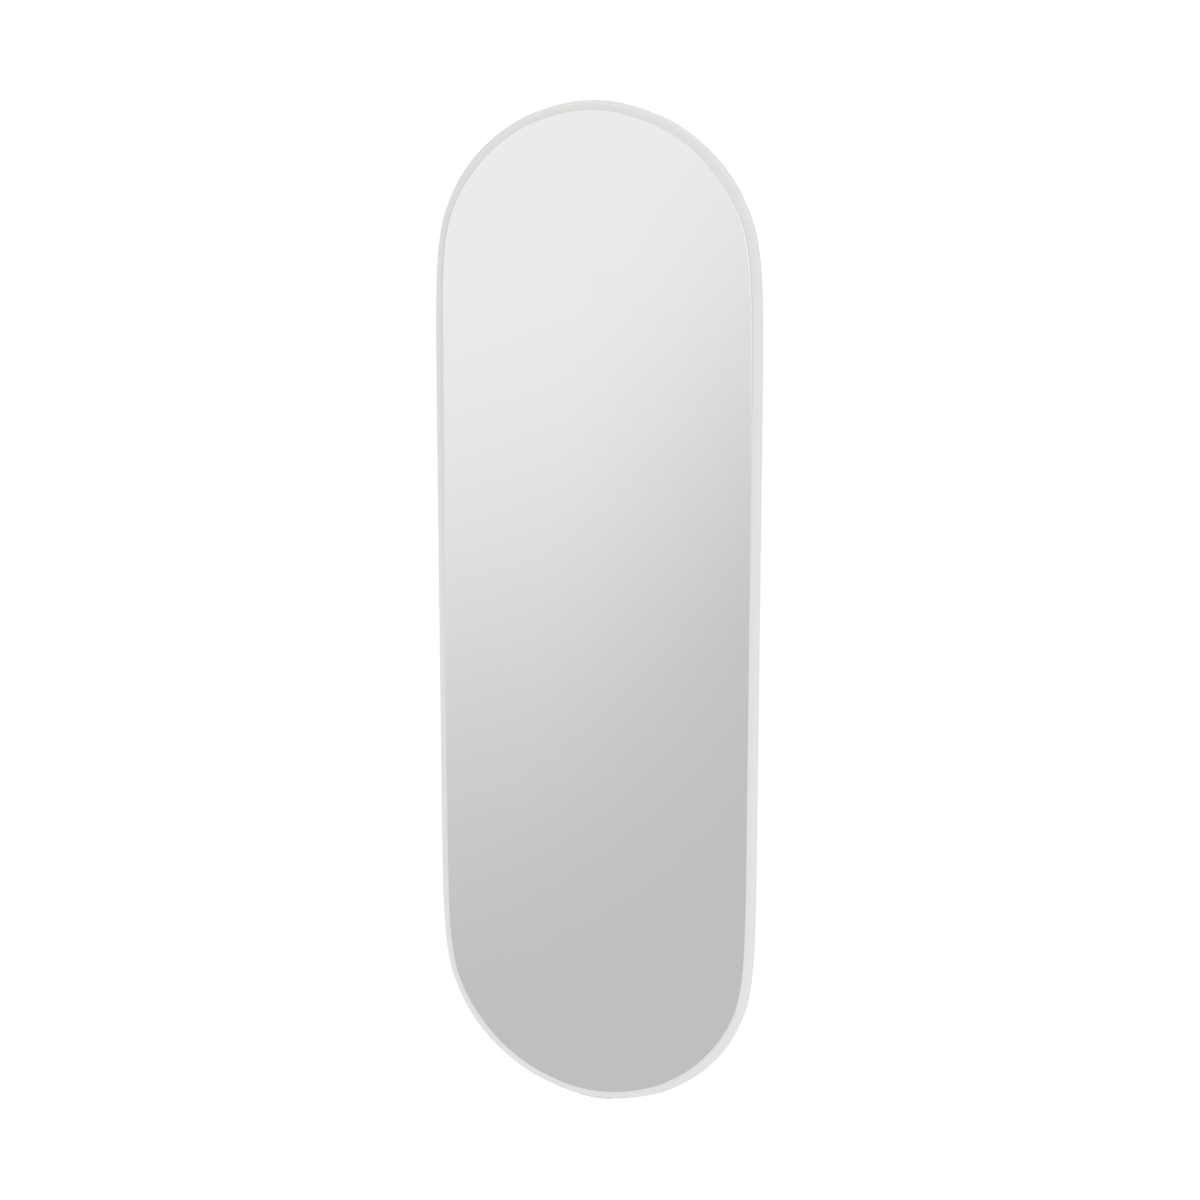 Montana FIGUUR Mirror Spiegel - SP824R White